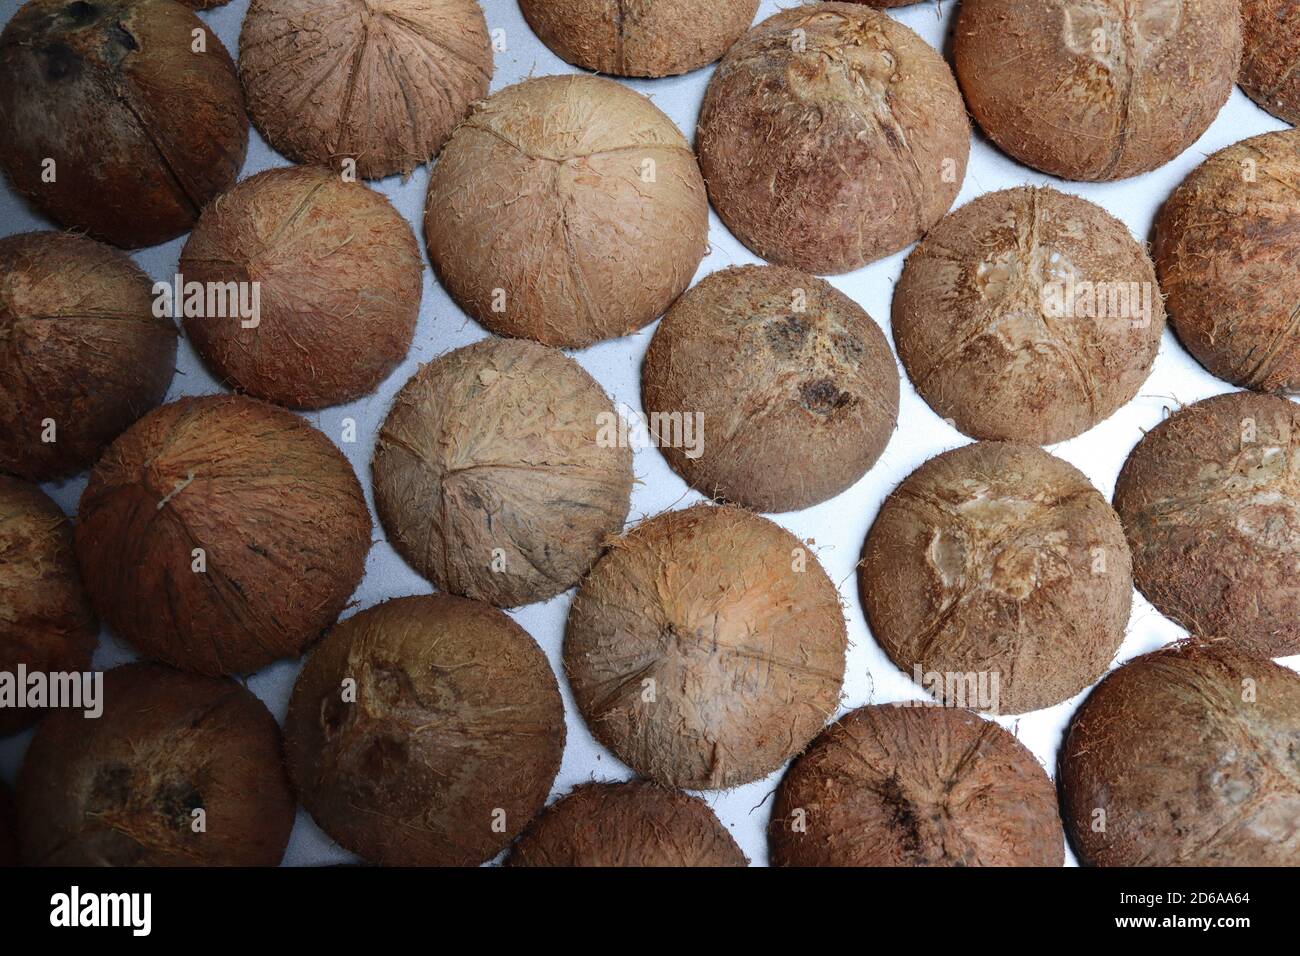 Queste sono conchiglie di cocco. Dopo aver raccolto la diffusione di cocco possiamo vedere queste conchiglie. Queste conchiglie sono pronte per la maggior parte degli articoli creativi fatti a mano. Foto Stock